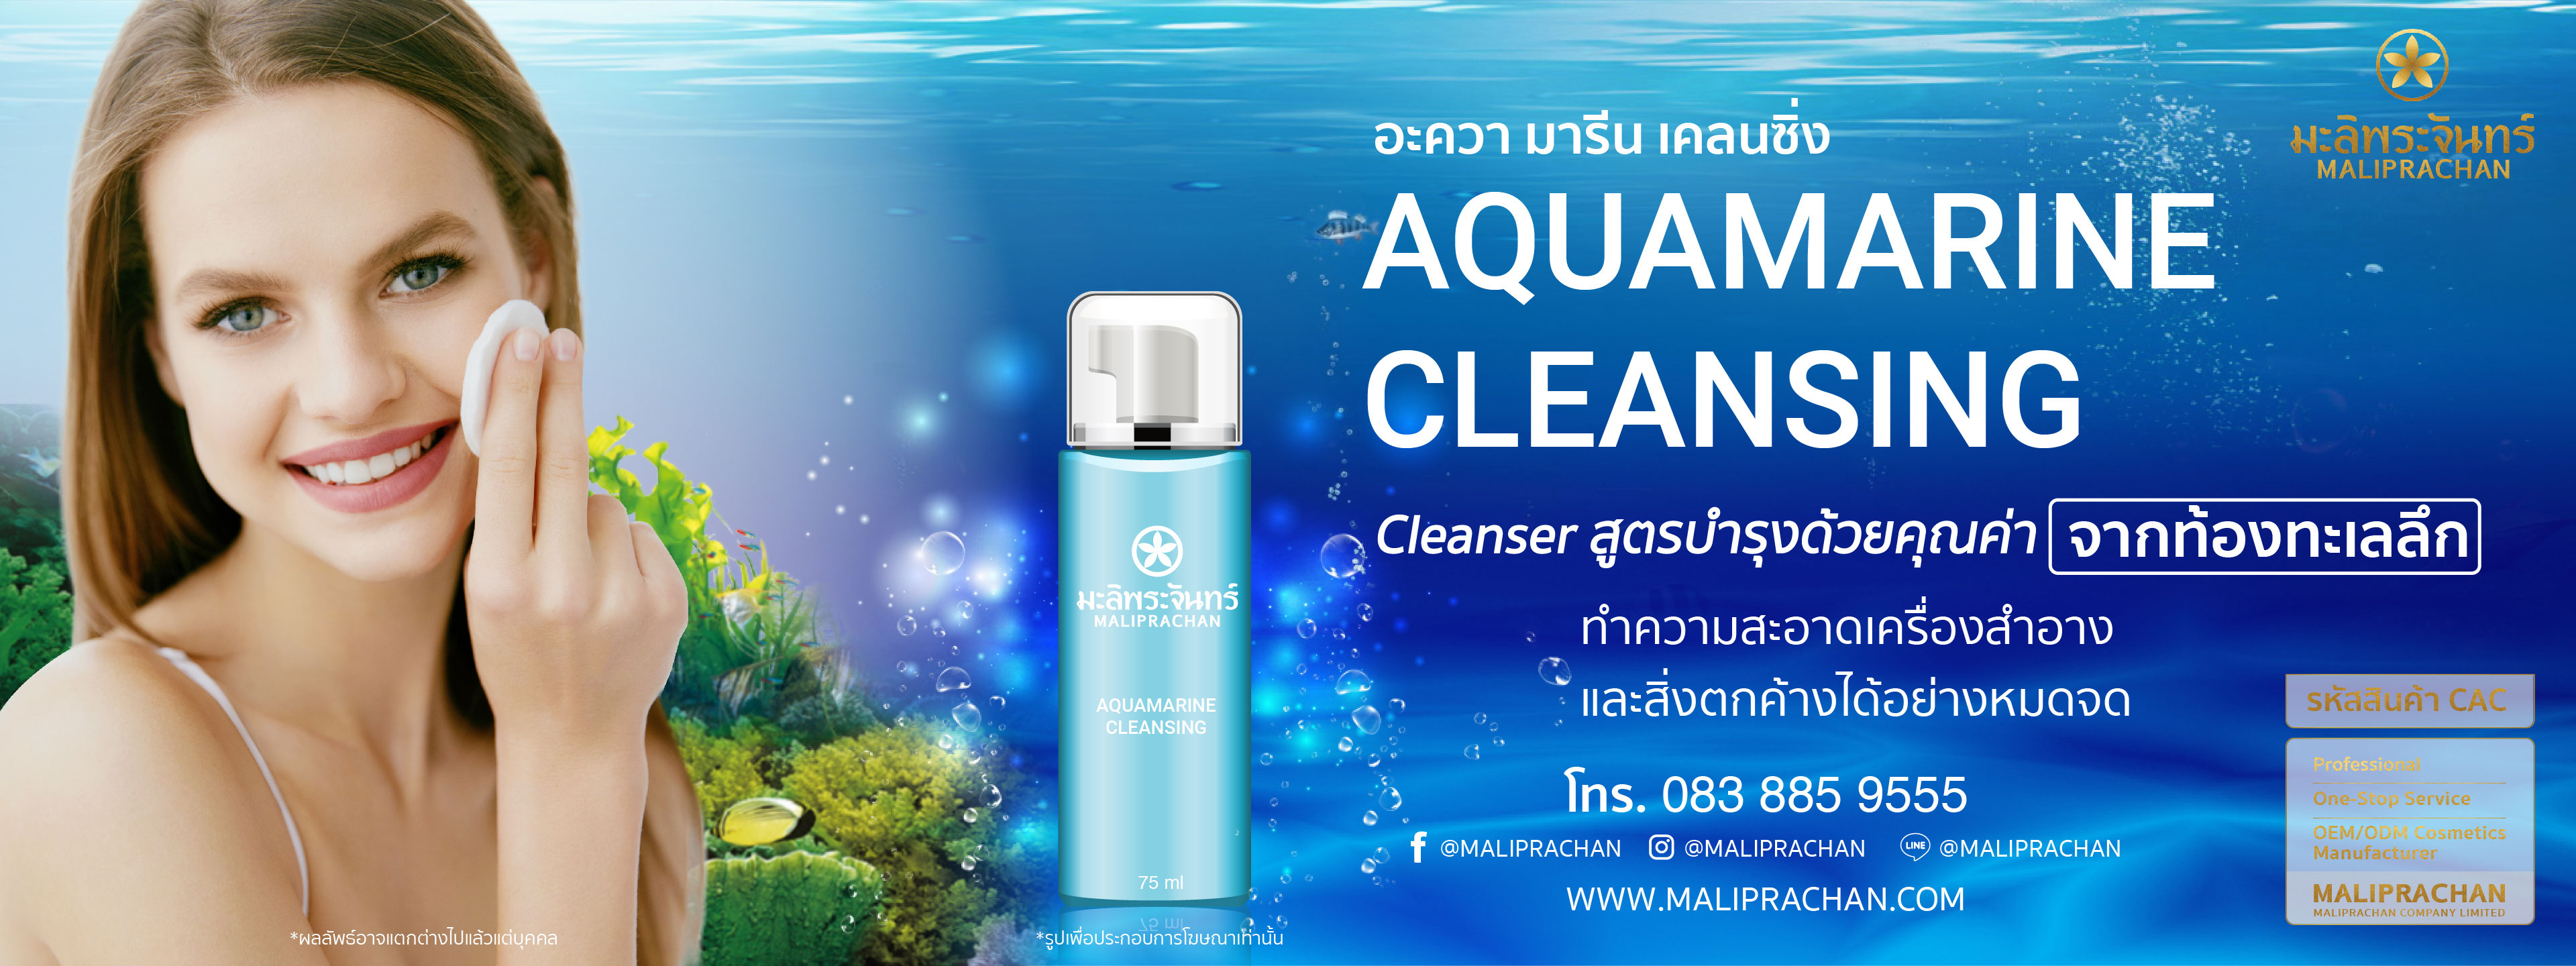 Aquamarine Cleansing